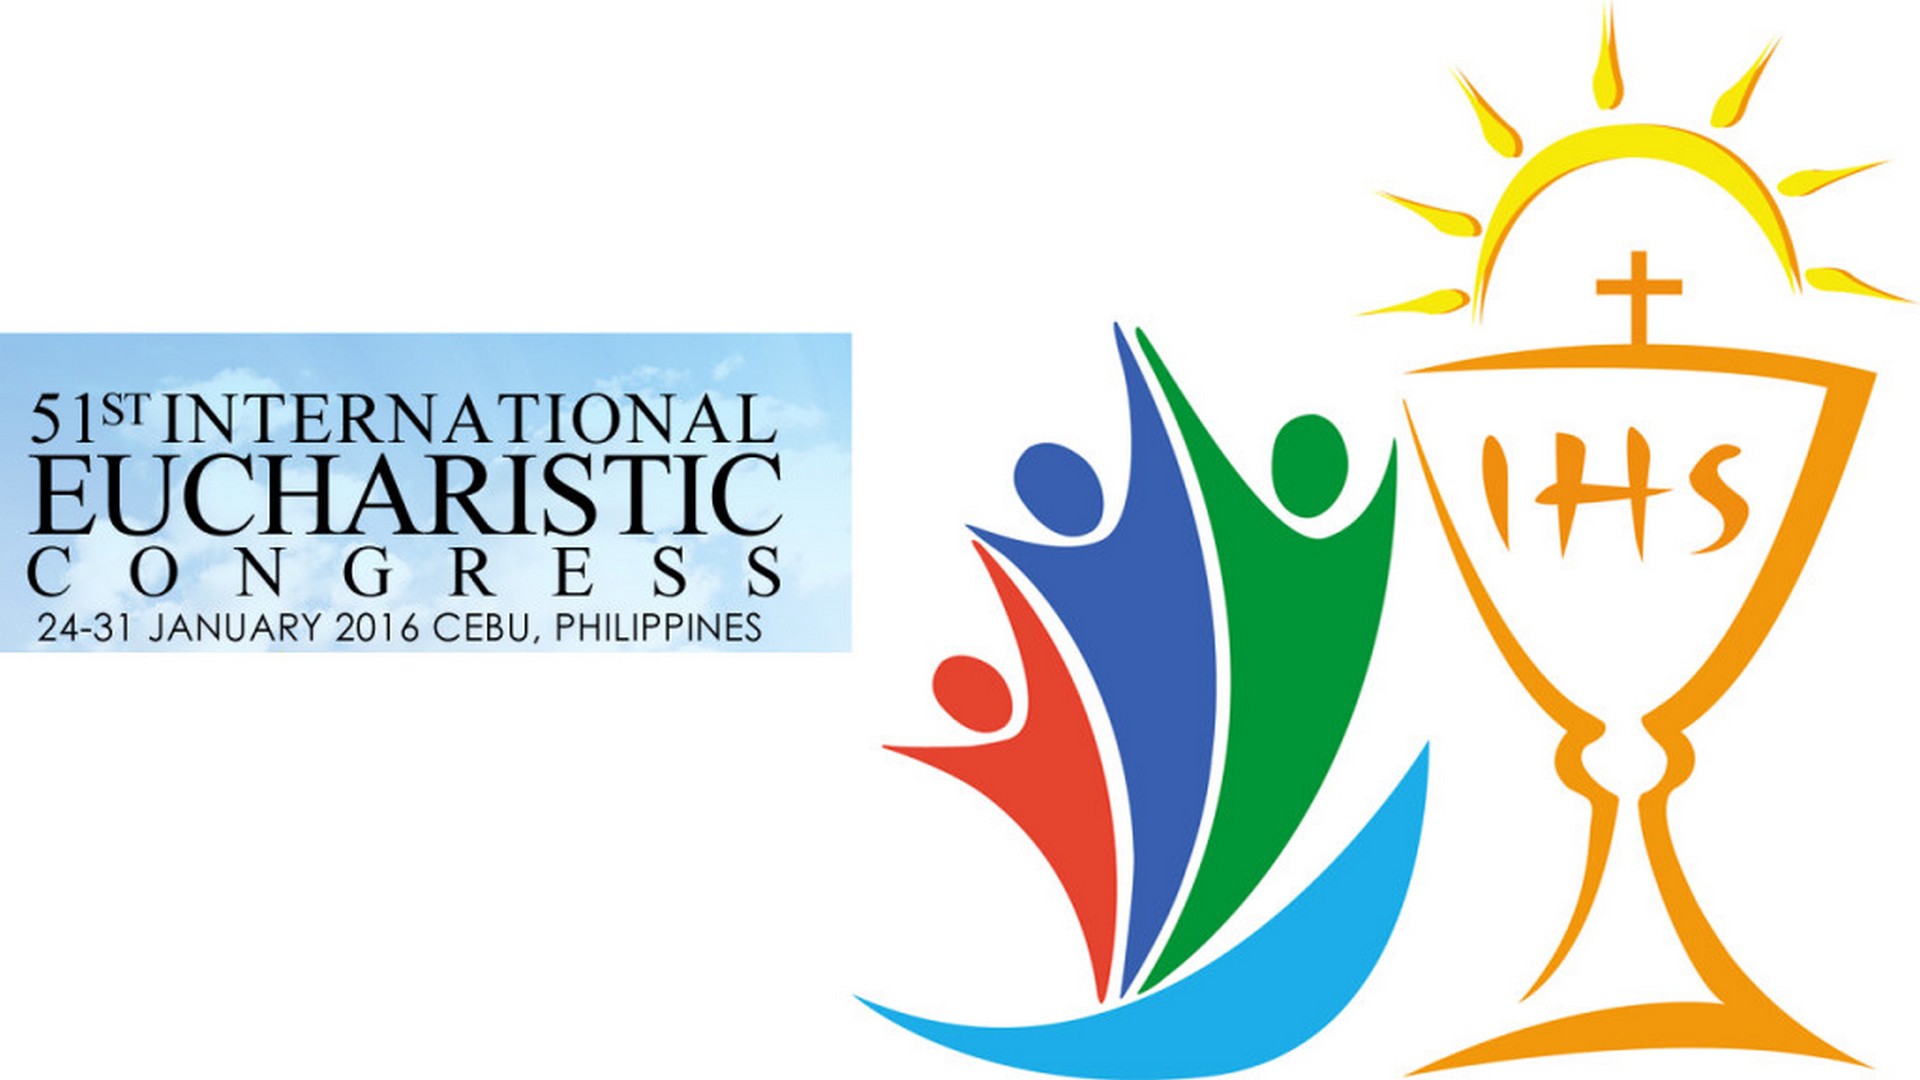 Le 51e Congrès eucharistique internationale a lieu à Cebu, aux Philippines, du 24 au 31 janvier 2016